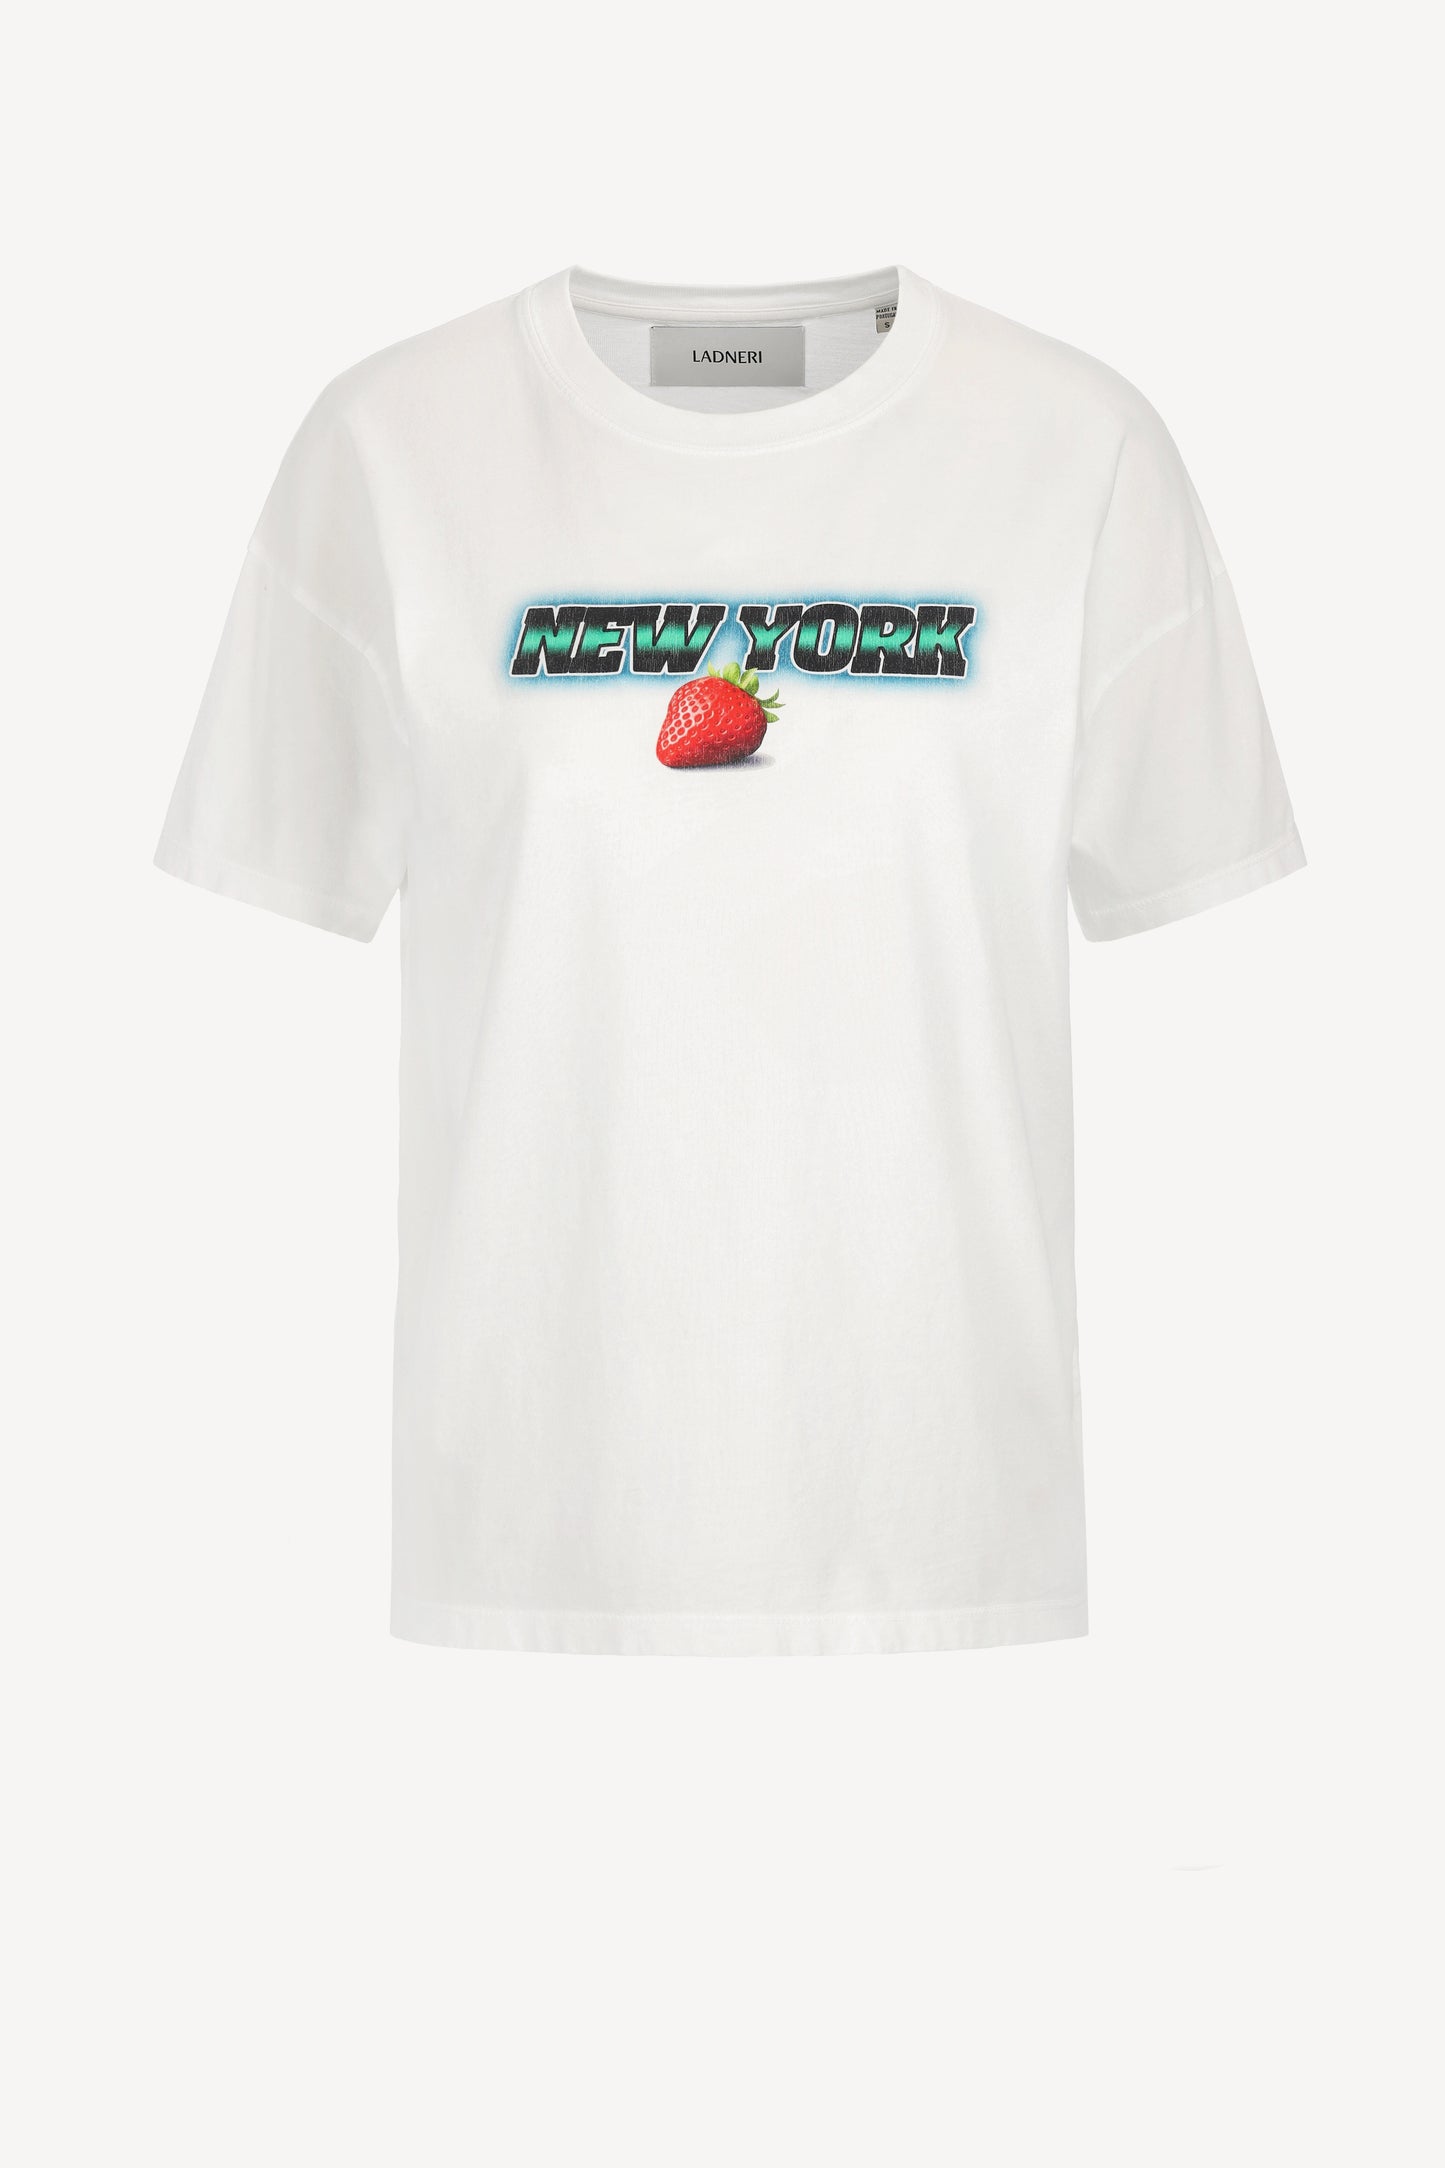 T-Shirt New York in WeißLadneri - Anita Hass